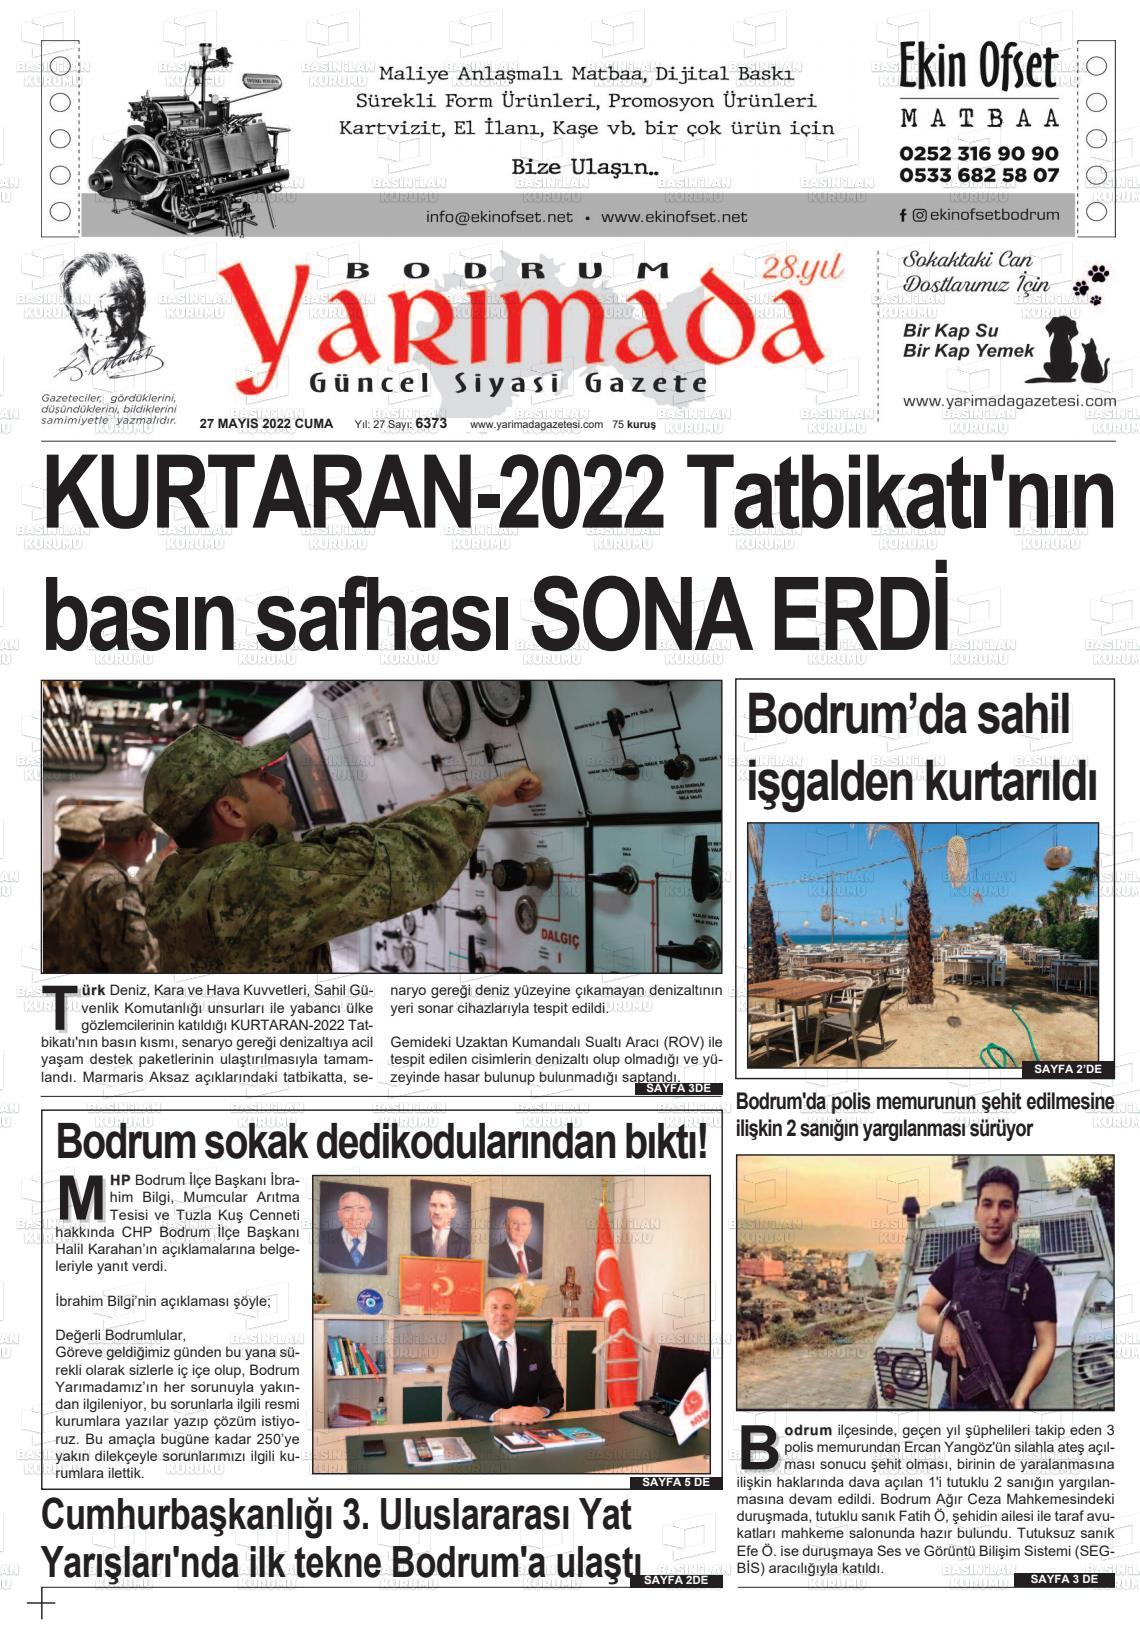 27 mayıs 2022 tarihli bodrum yarimada gazete manşetleri